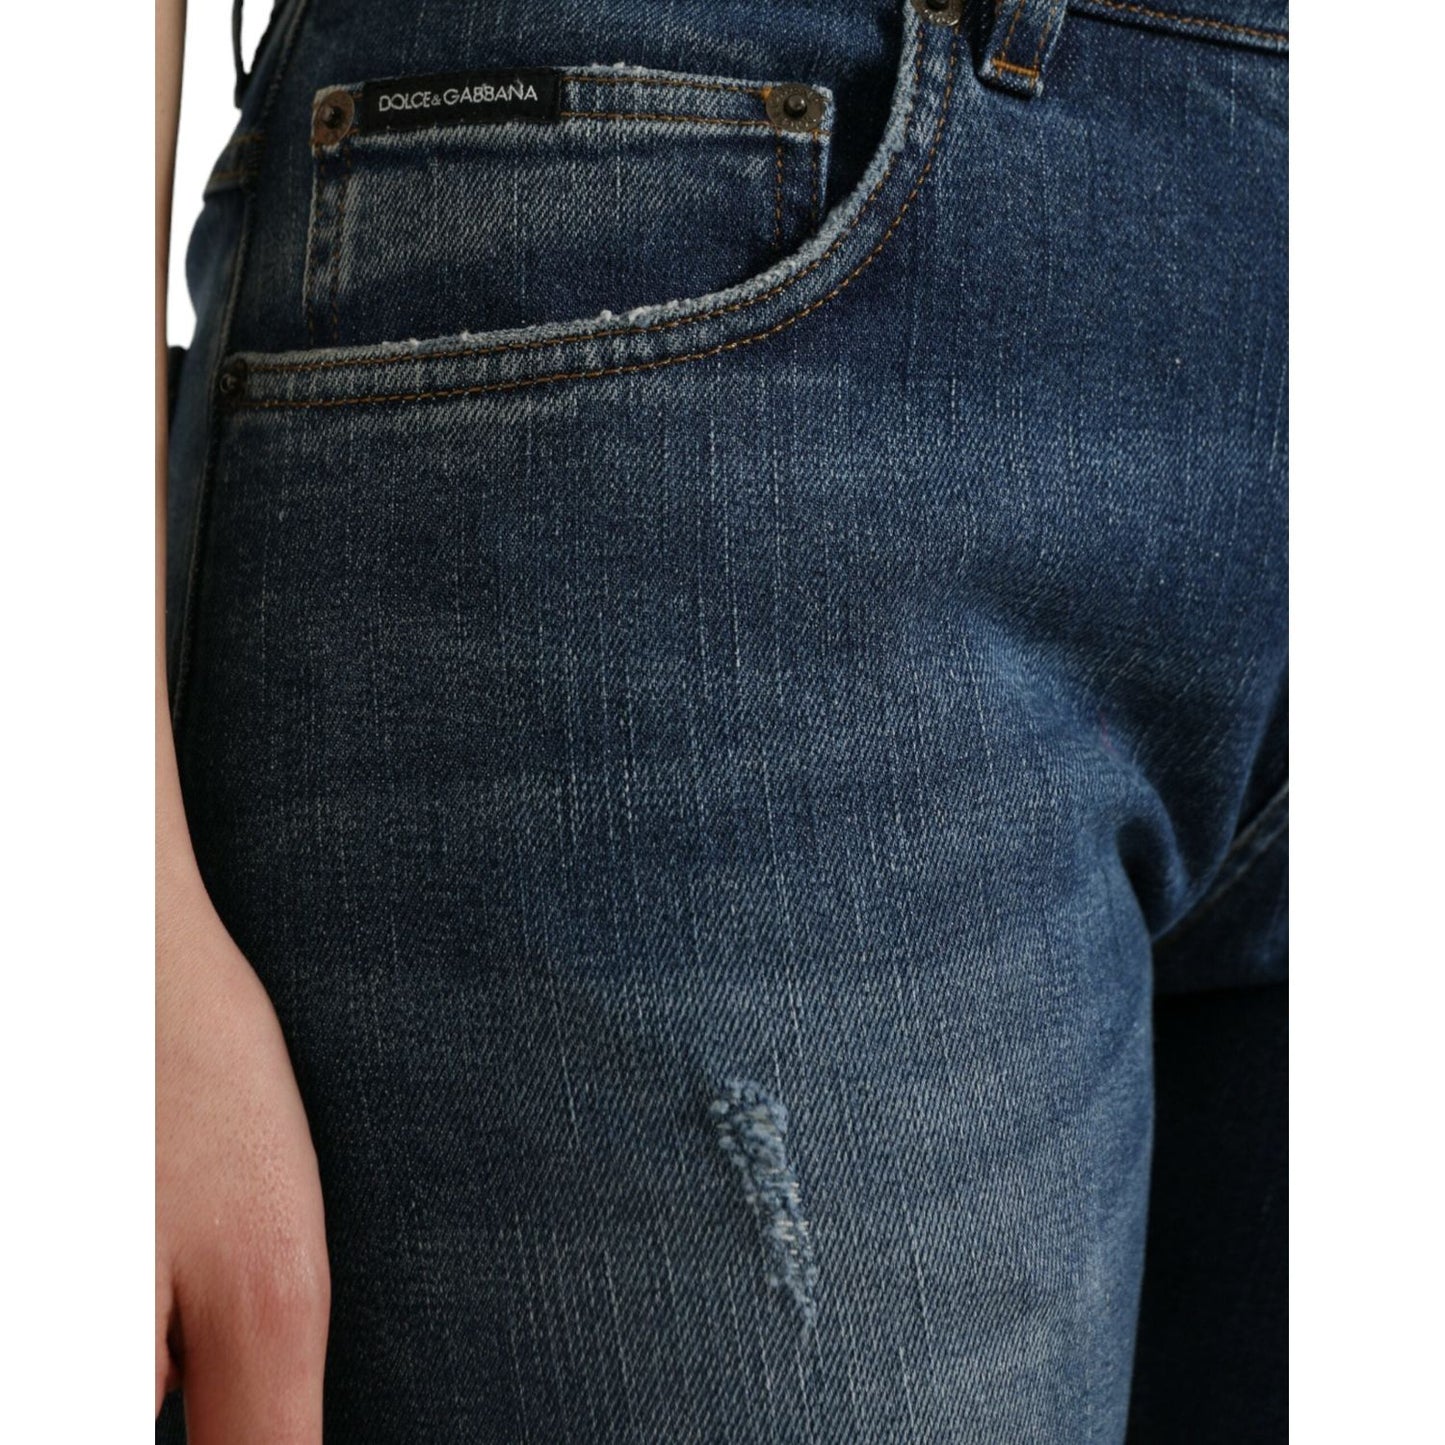 Dolce & Gabbana Chic Boyfriend Mid-Waist Stretch Jeans blue-boyfriend-mid-waist-cotton-denim-jeans